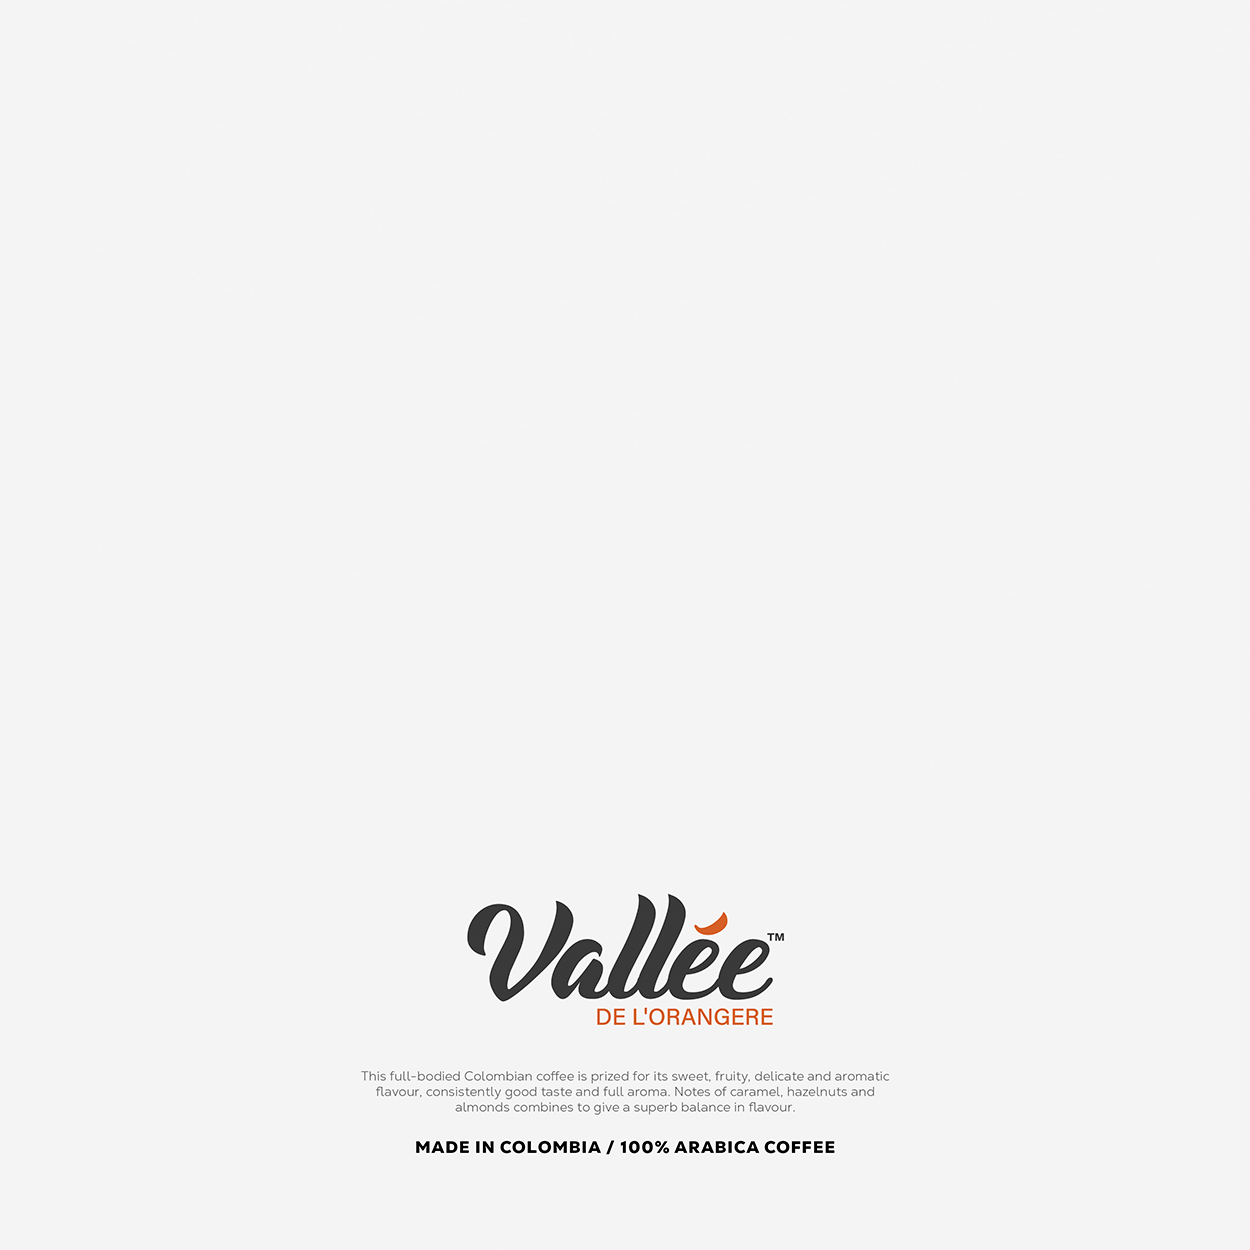 Vallee De'Lorangere Coffee Packaging Design & Branding UK England